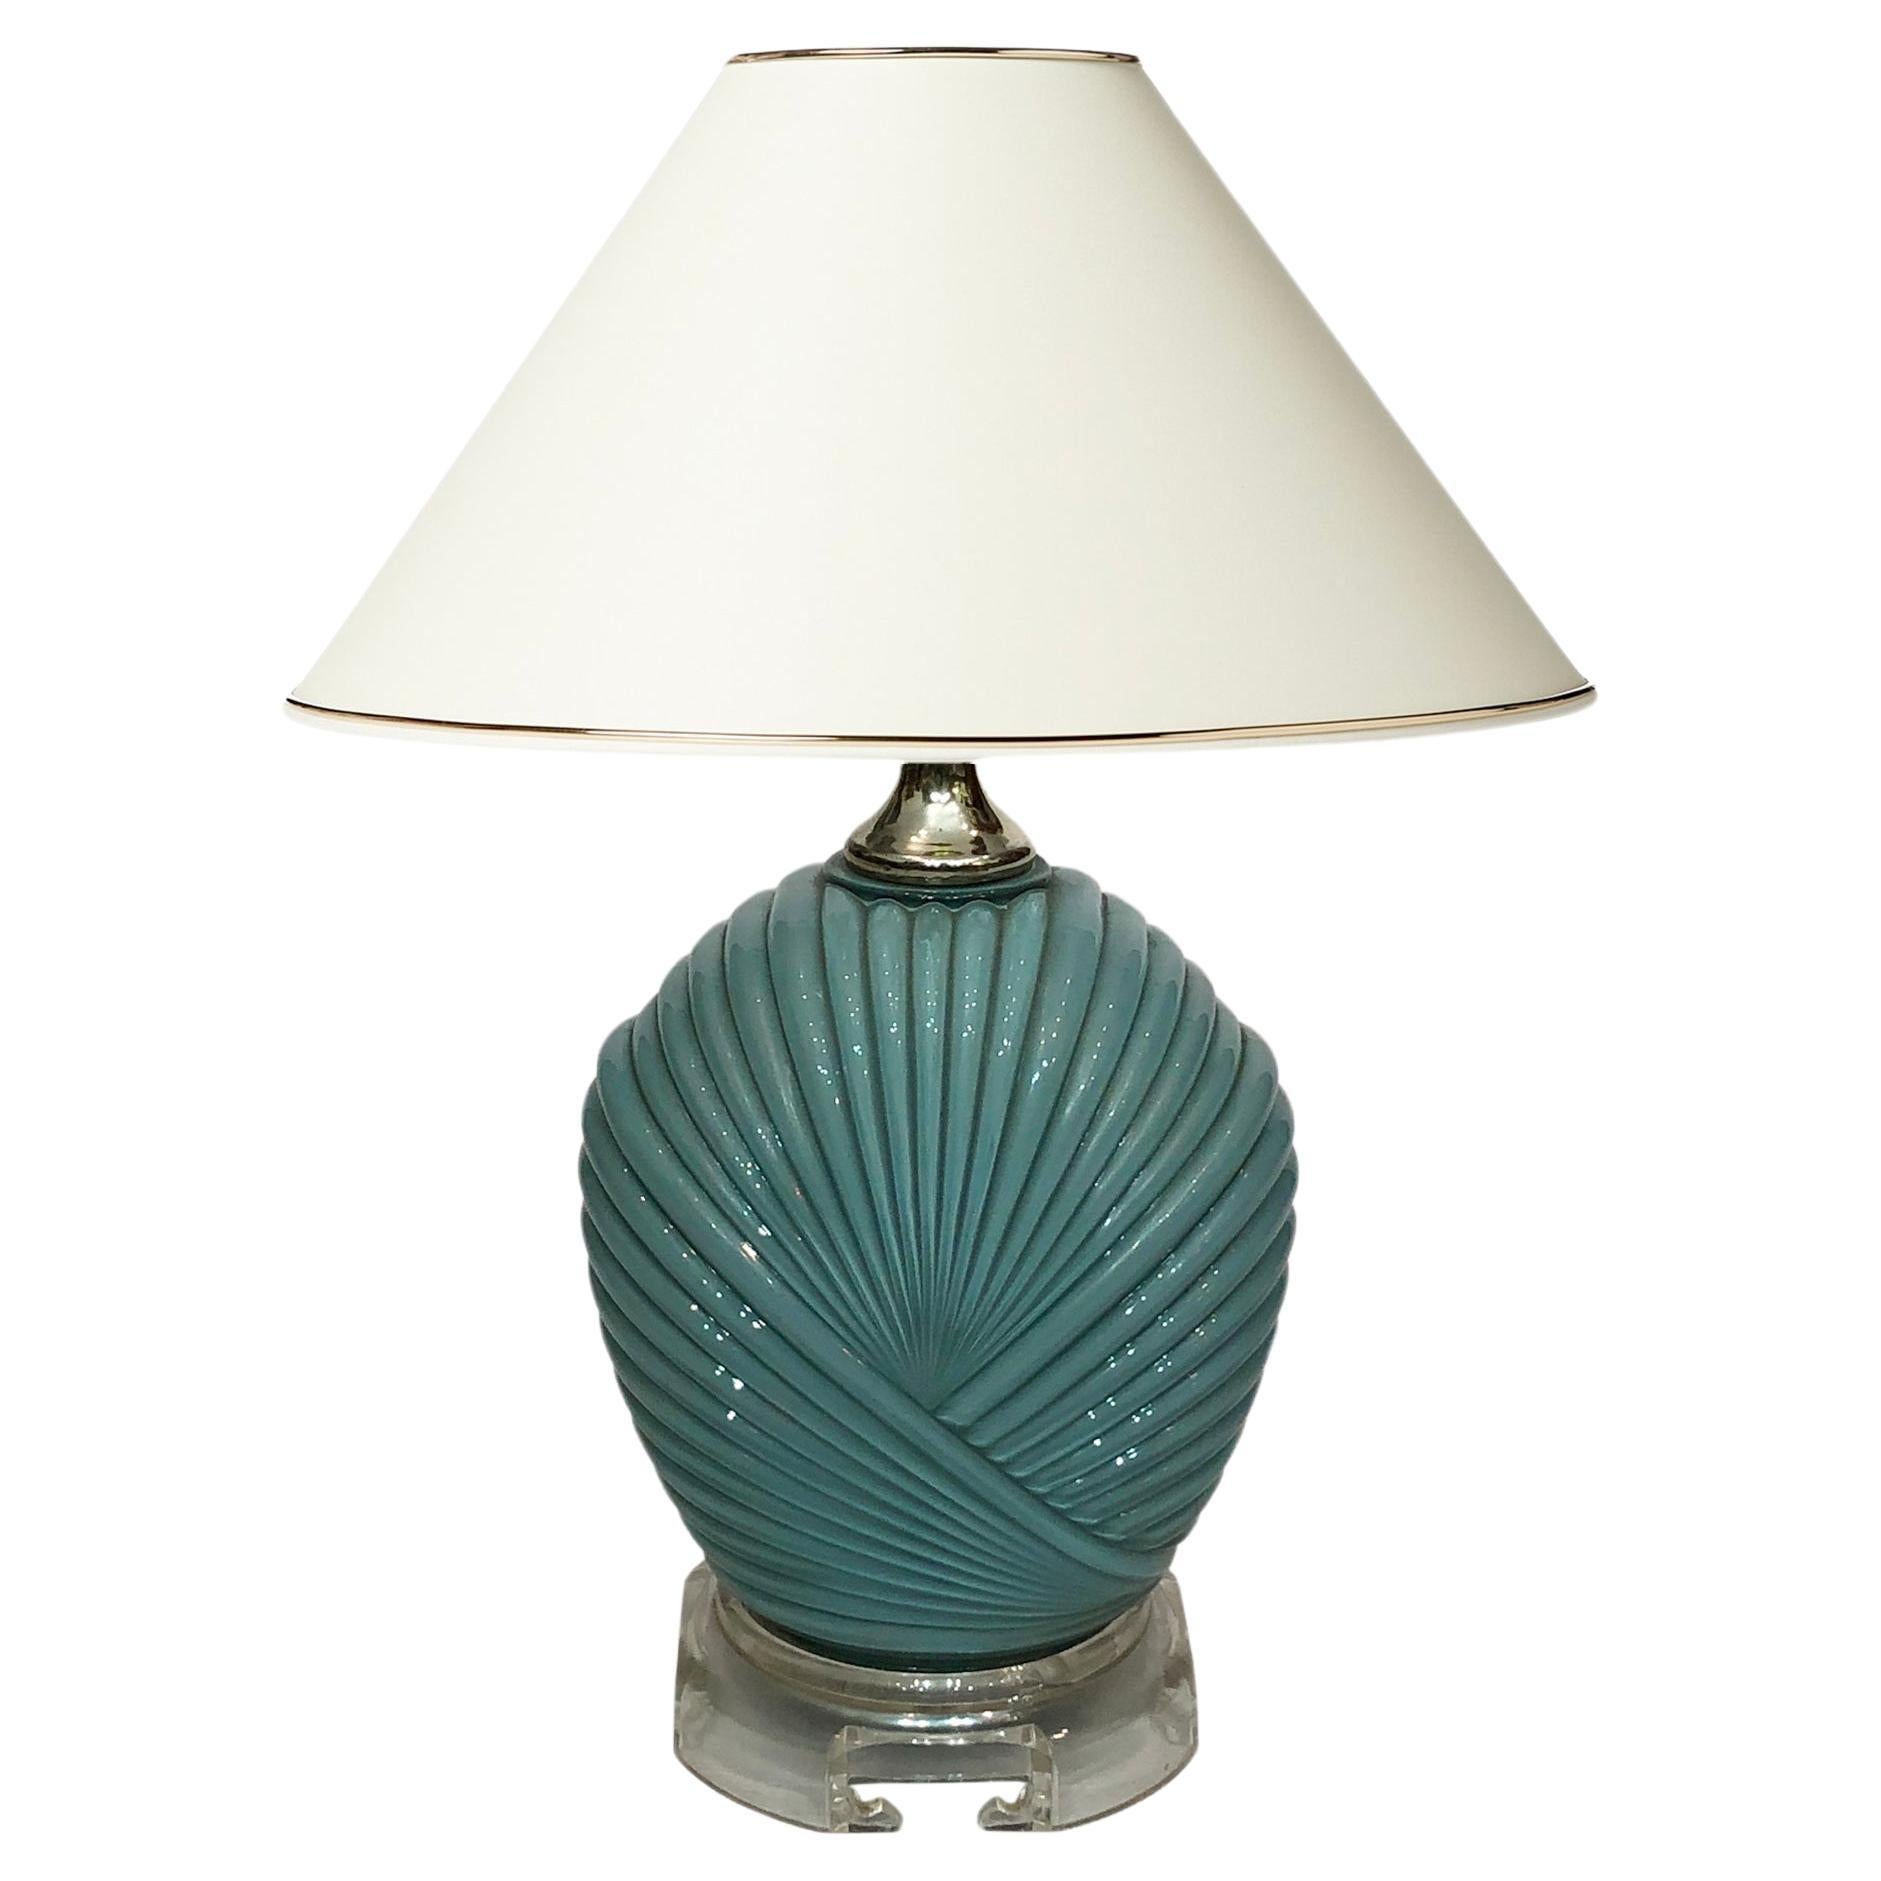 Lampe de table Candy bleu poussière turquoise des années 1970 Hollywood Regency Midcentury Vintage